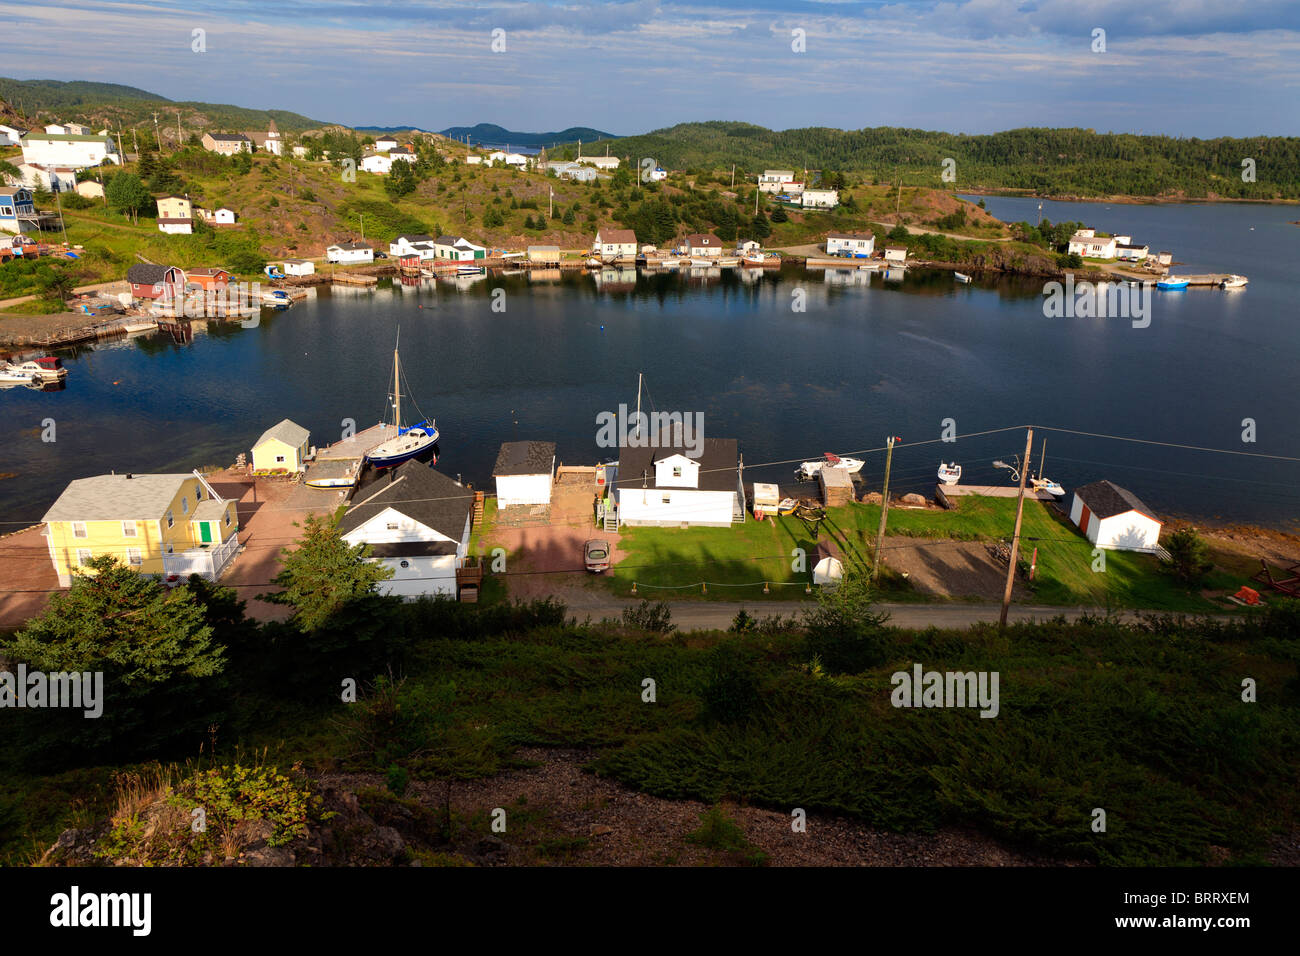 Malerischer Blick auf den Hafen in einer kleinen Bucht mit Fischerdocks, Booten, Stegen und Holzgebäuden auf Pilley's Island, Neufundland, Kanada Stockfoto